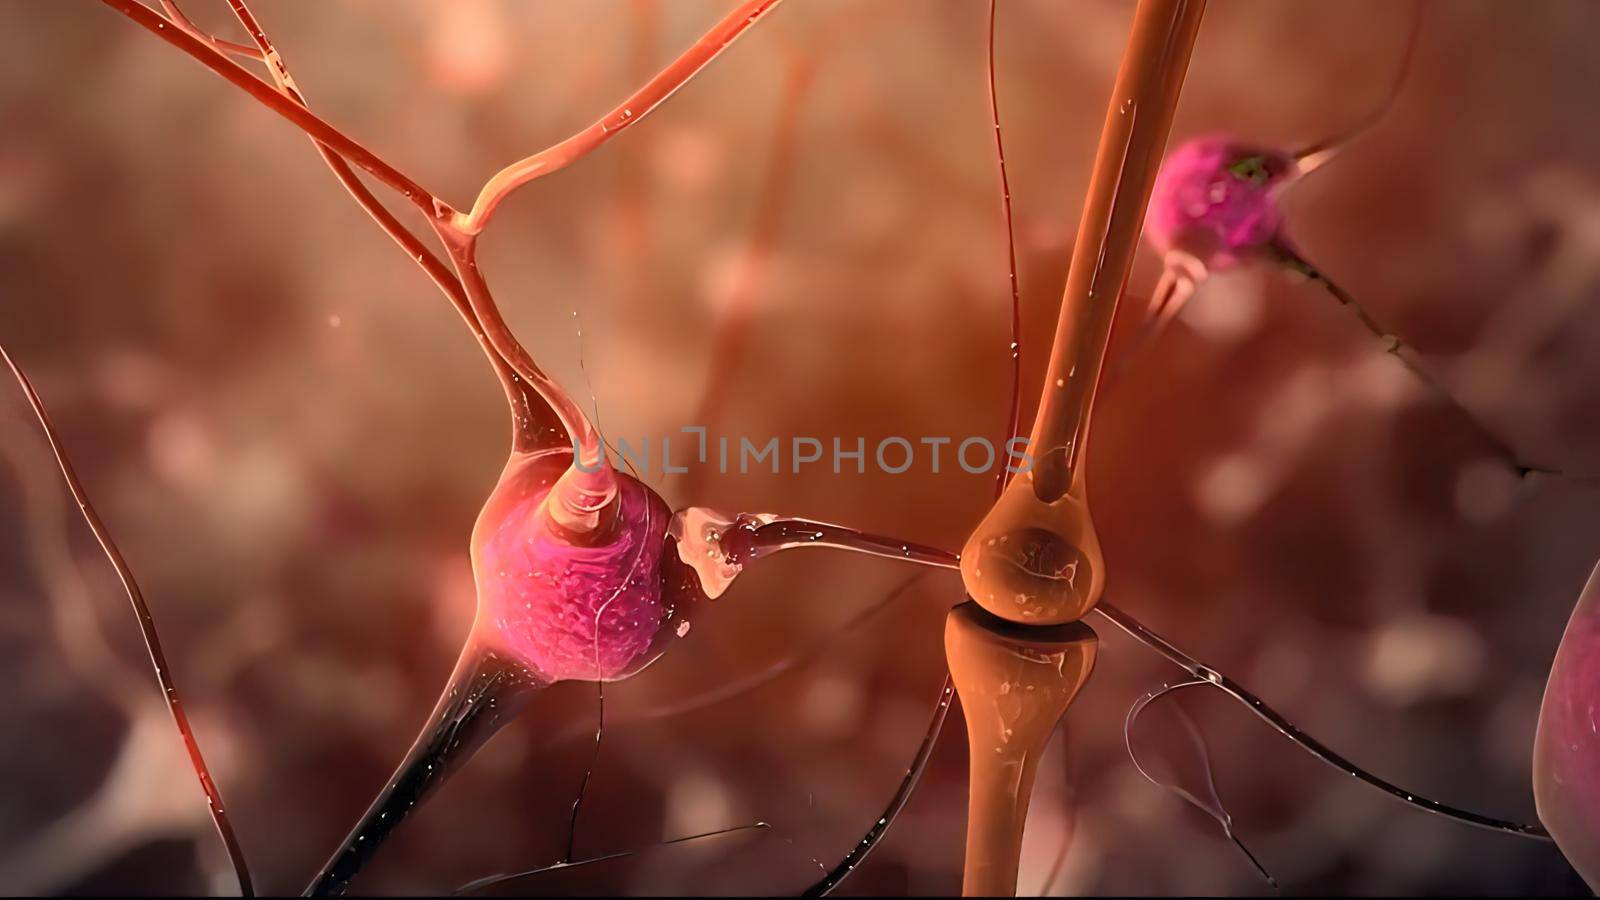 Neuron and synapses 3d medical illustration. Neurogenesis, remyelination, myelin,